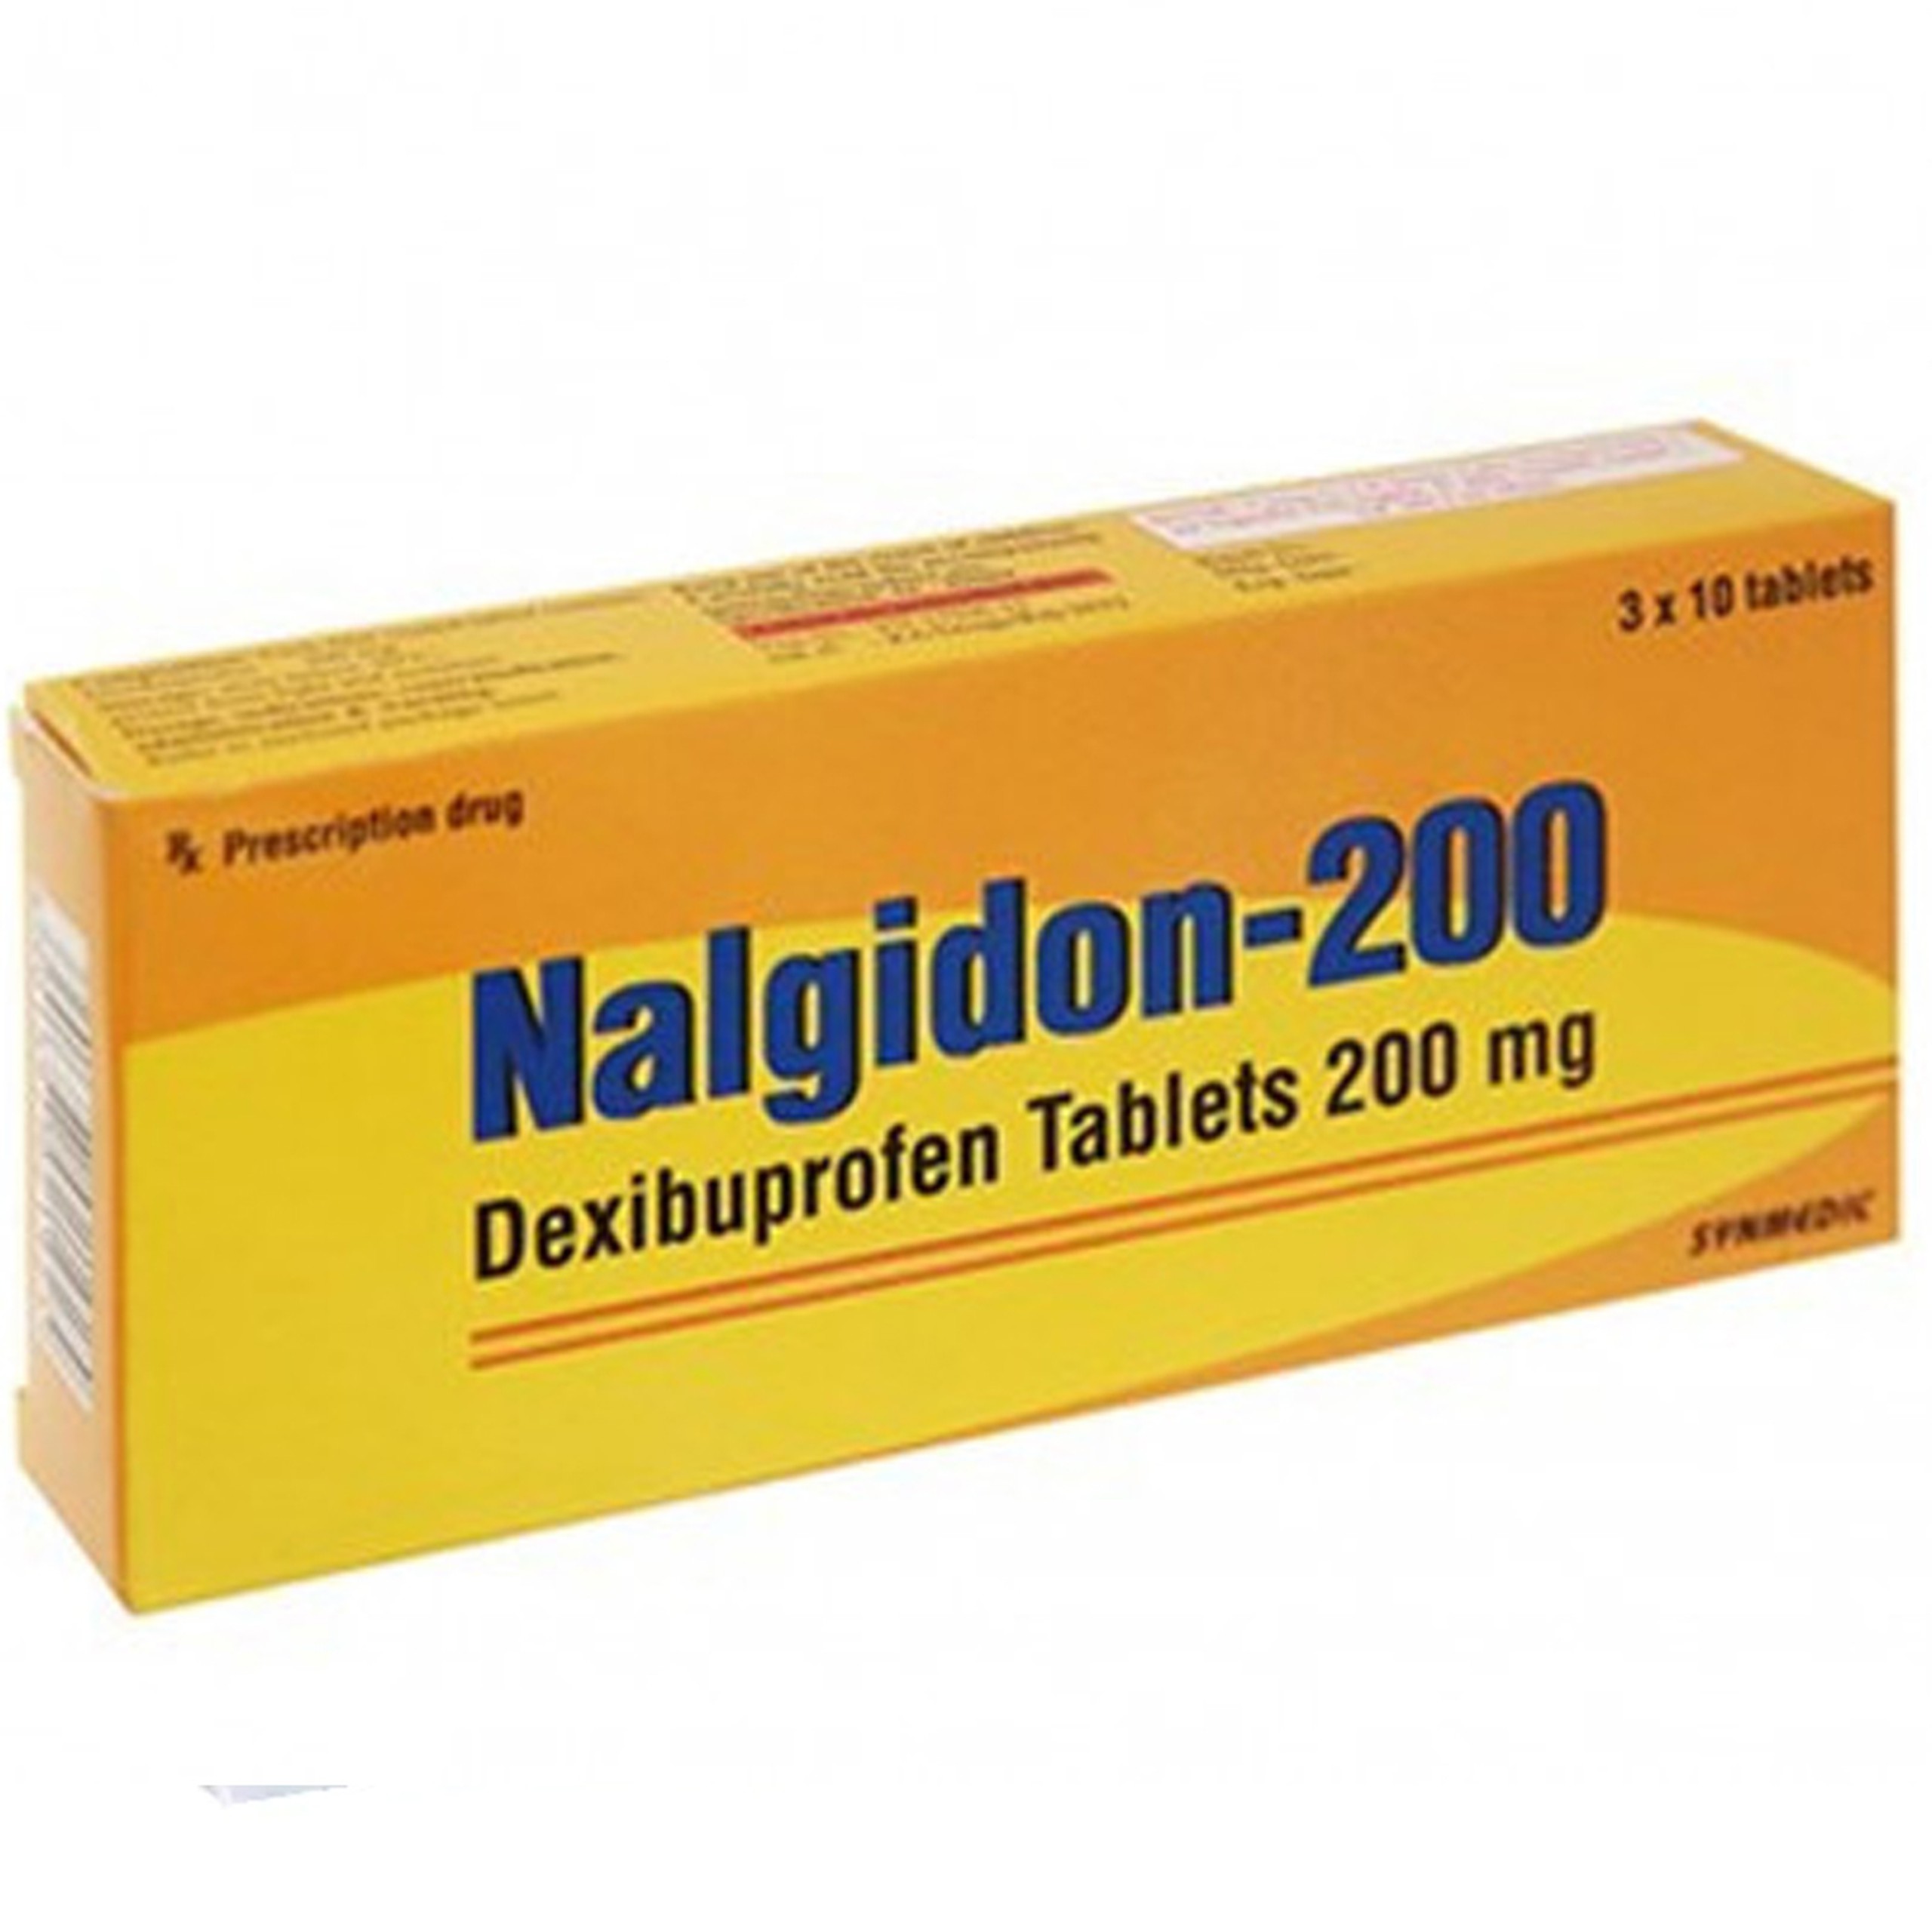 Thuốc Nalgidon-200 Synmedic điều trị triệu chứng và giảm đau trong viêm khớp dạng thấp (3 vỉ x 10 viên)